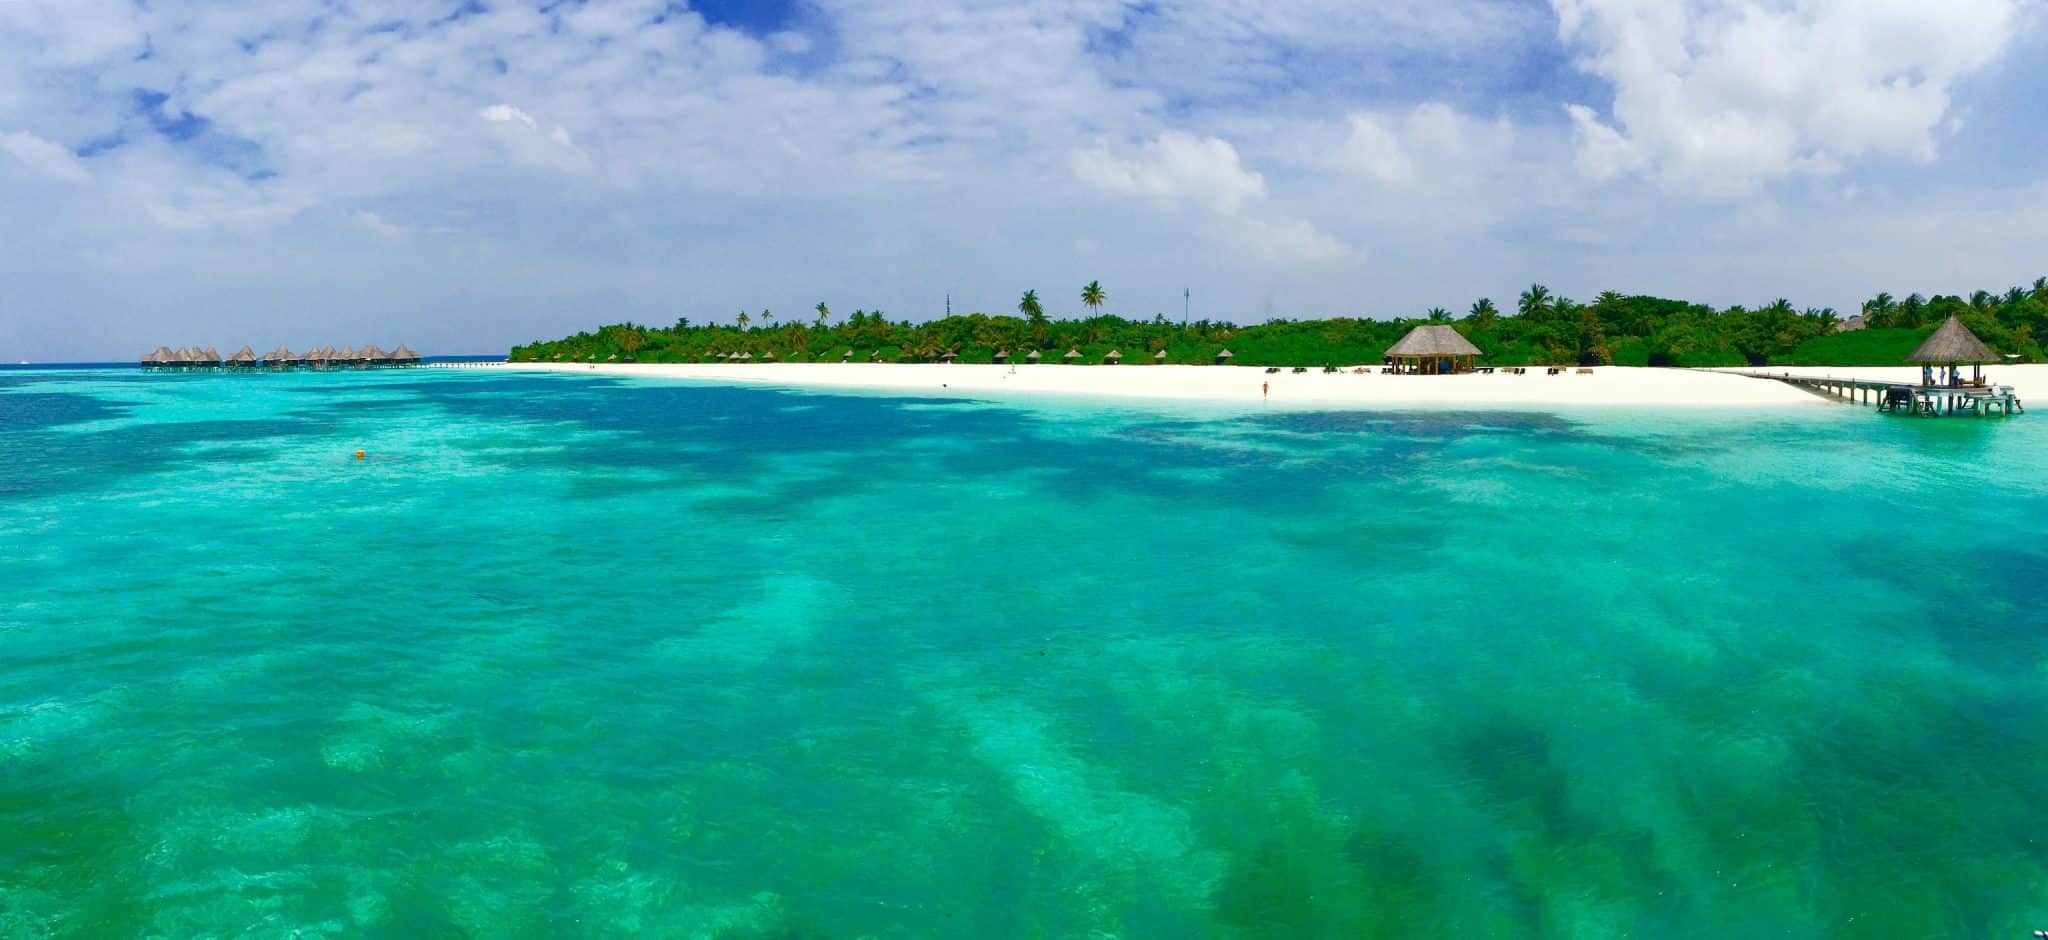 Isla turística en las Maldivas: los hoteles y resorts de la nación insular se encuentran entre los más bellos del mundo.